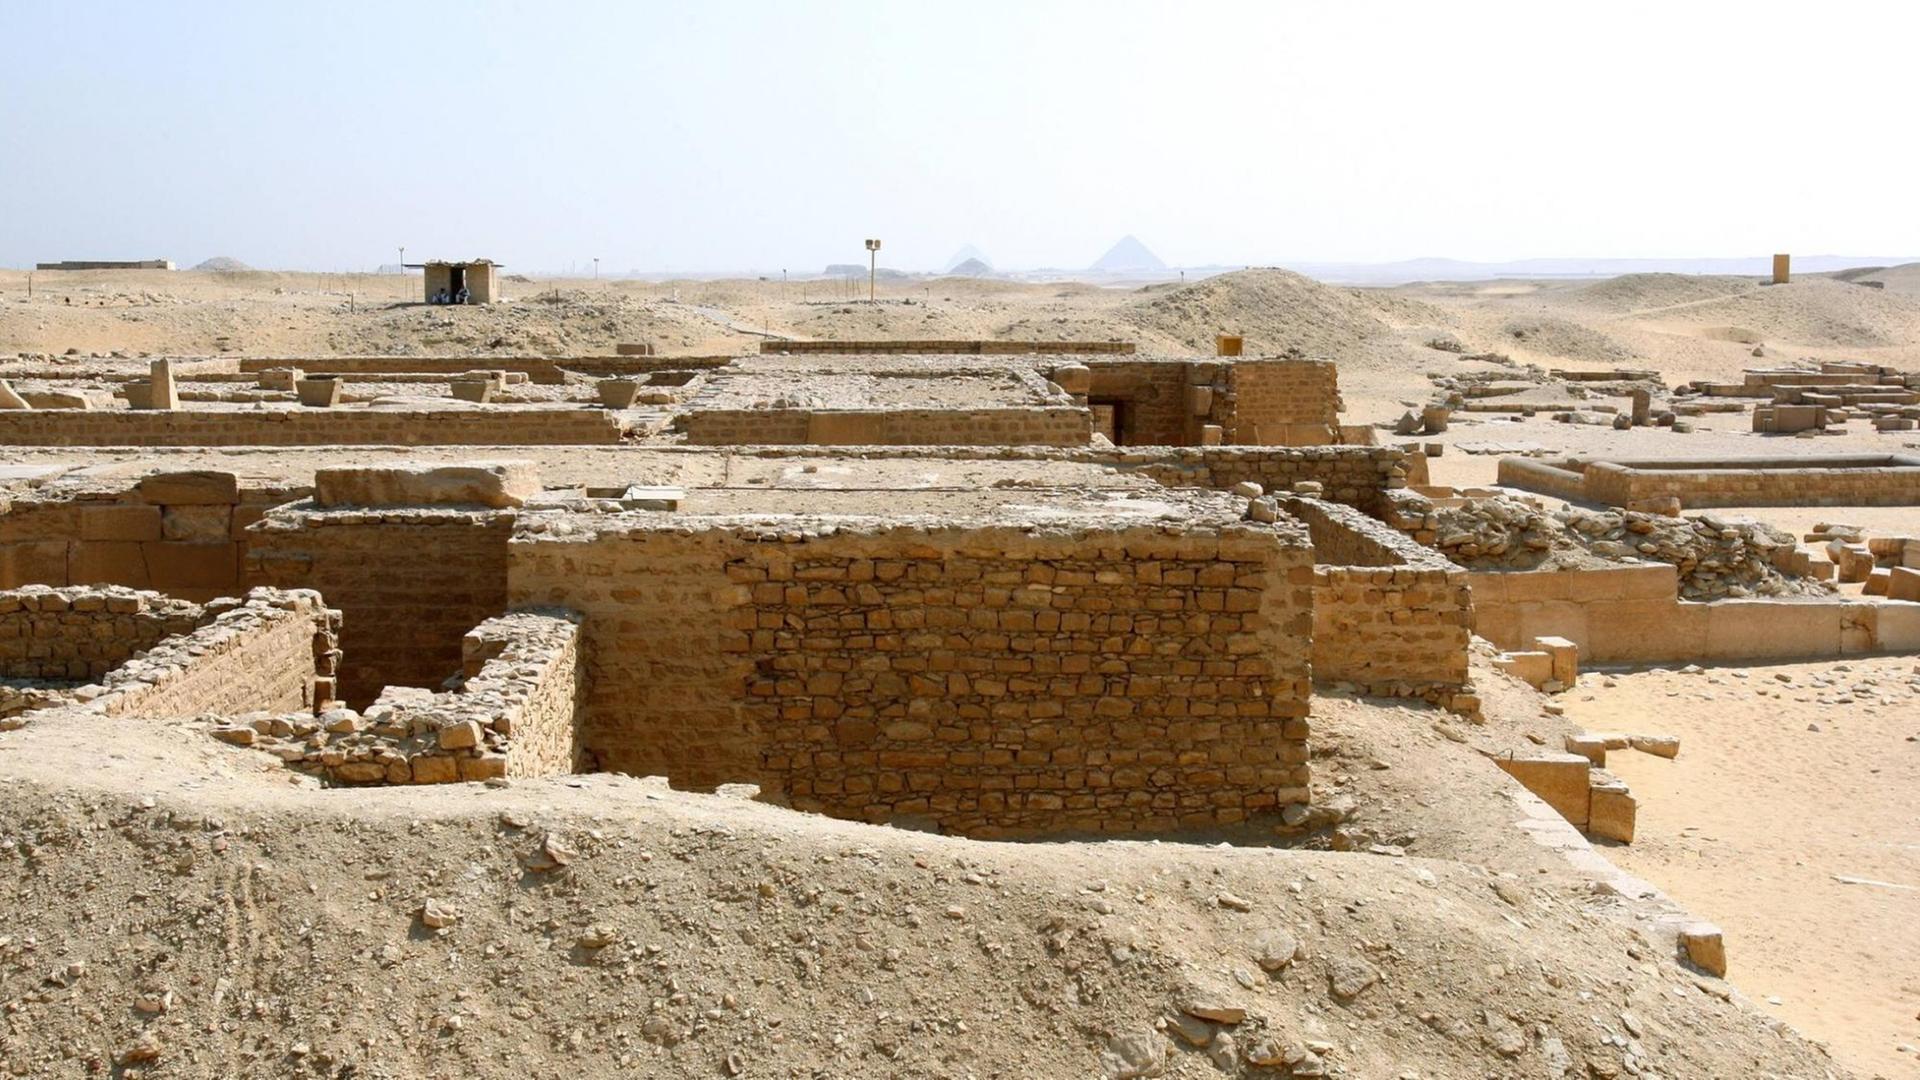 Teil der Sakkara-Totenstadt in Ägypten.